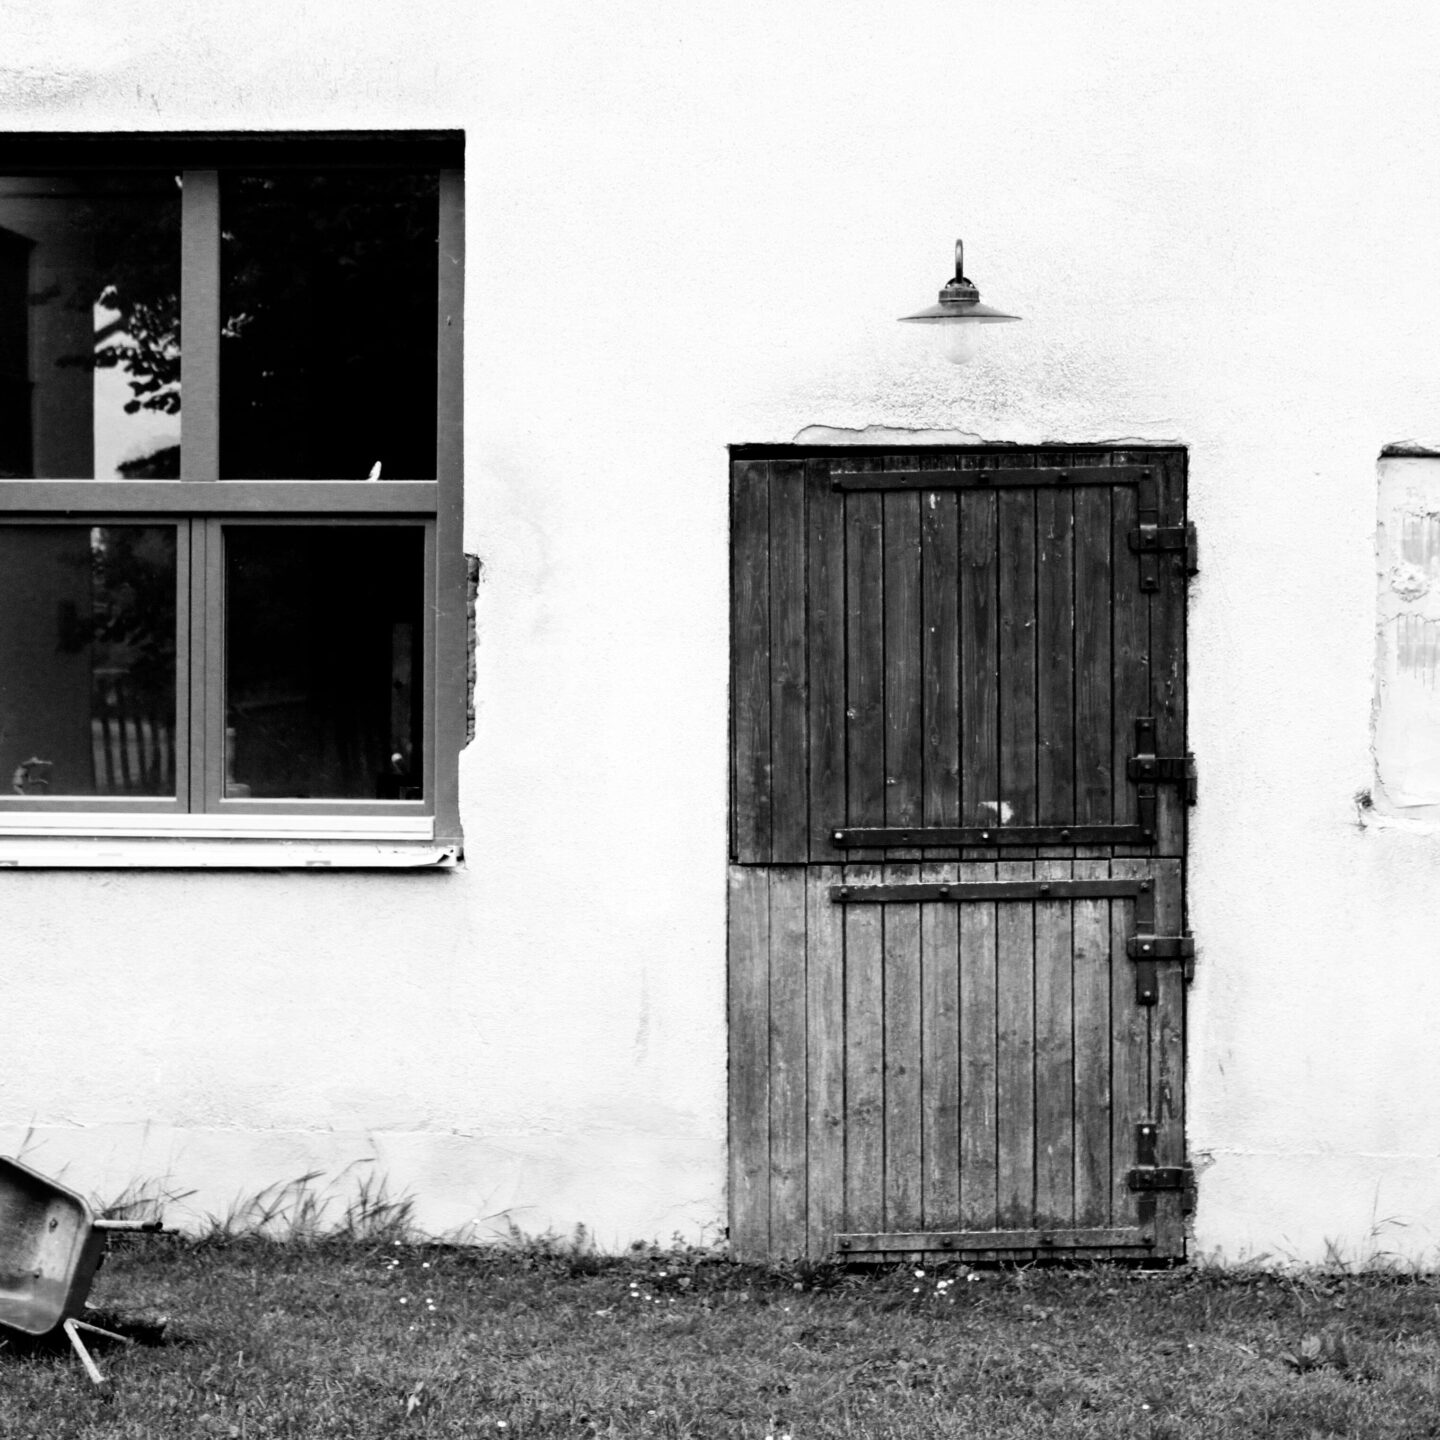 schwarz weiß Bild einer alten Stalltür und einem neuen Fenster